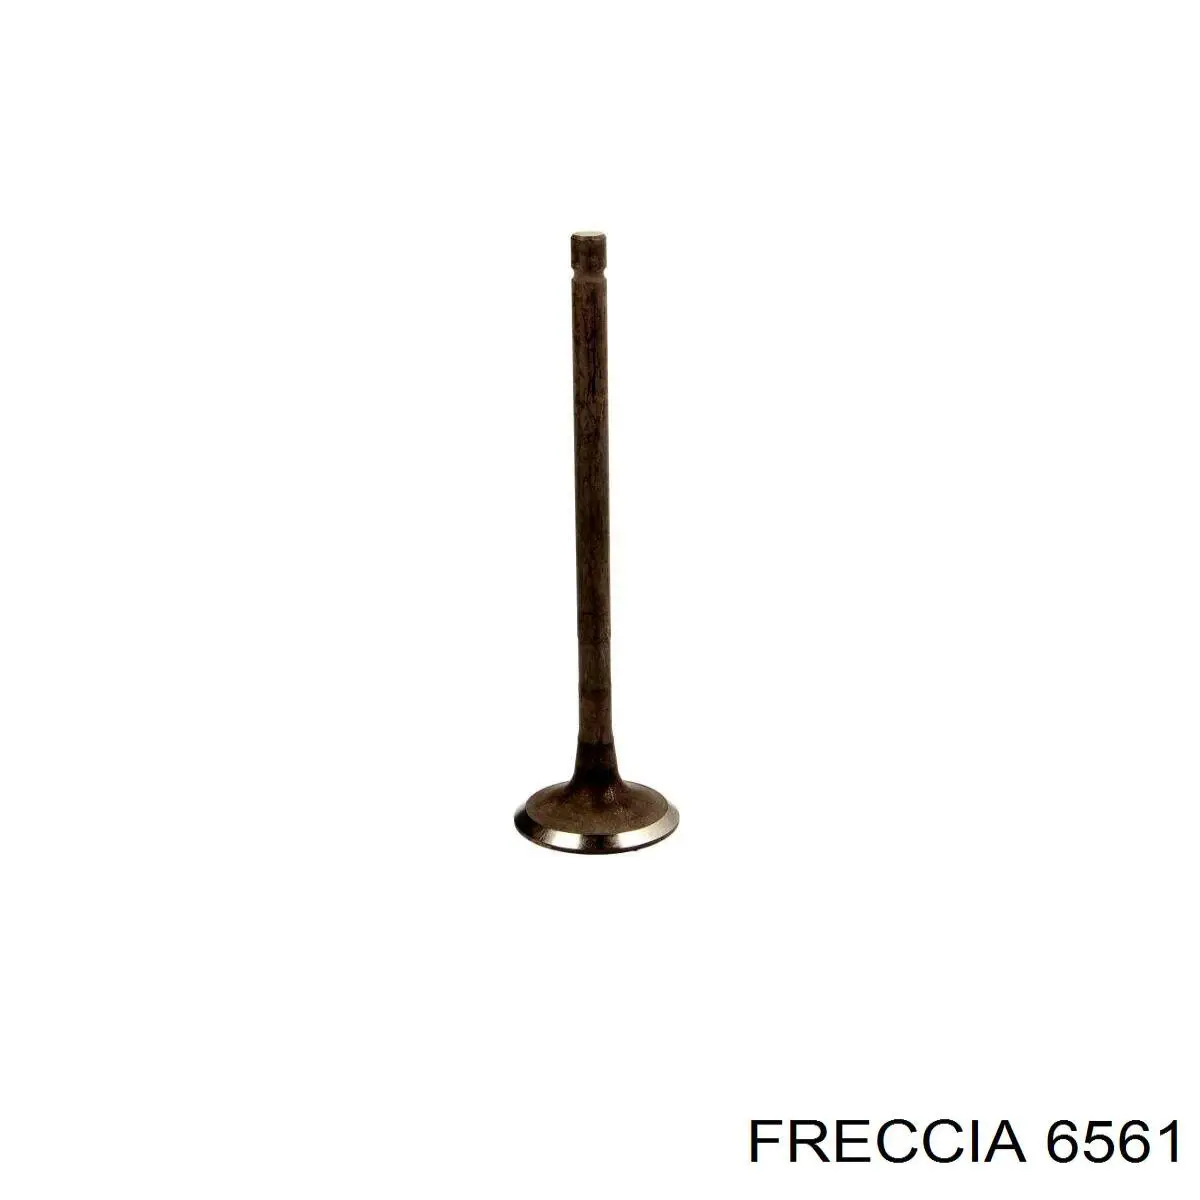 6561 Freccia клапан выпускной